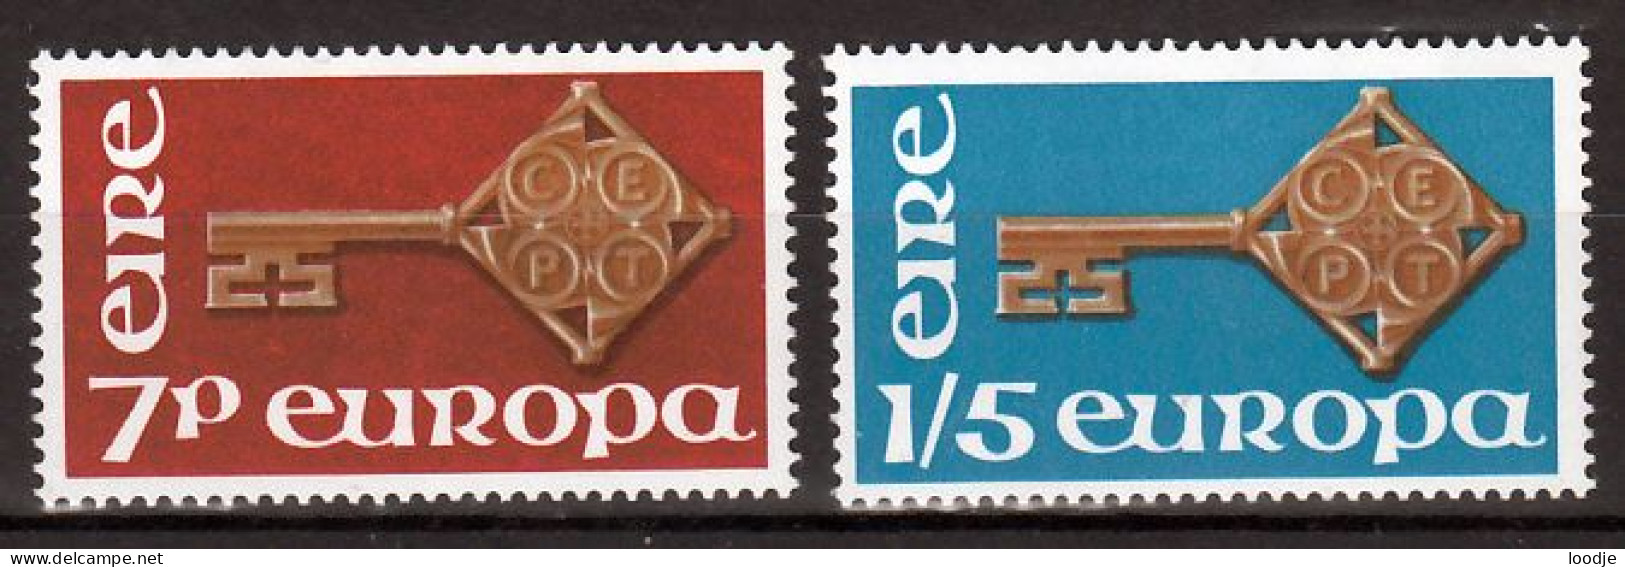 Ierland  Europa Cept 1968 Postfris - 1968